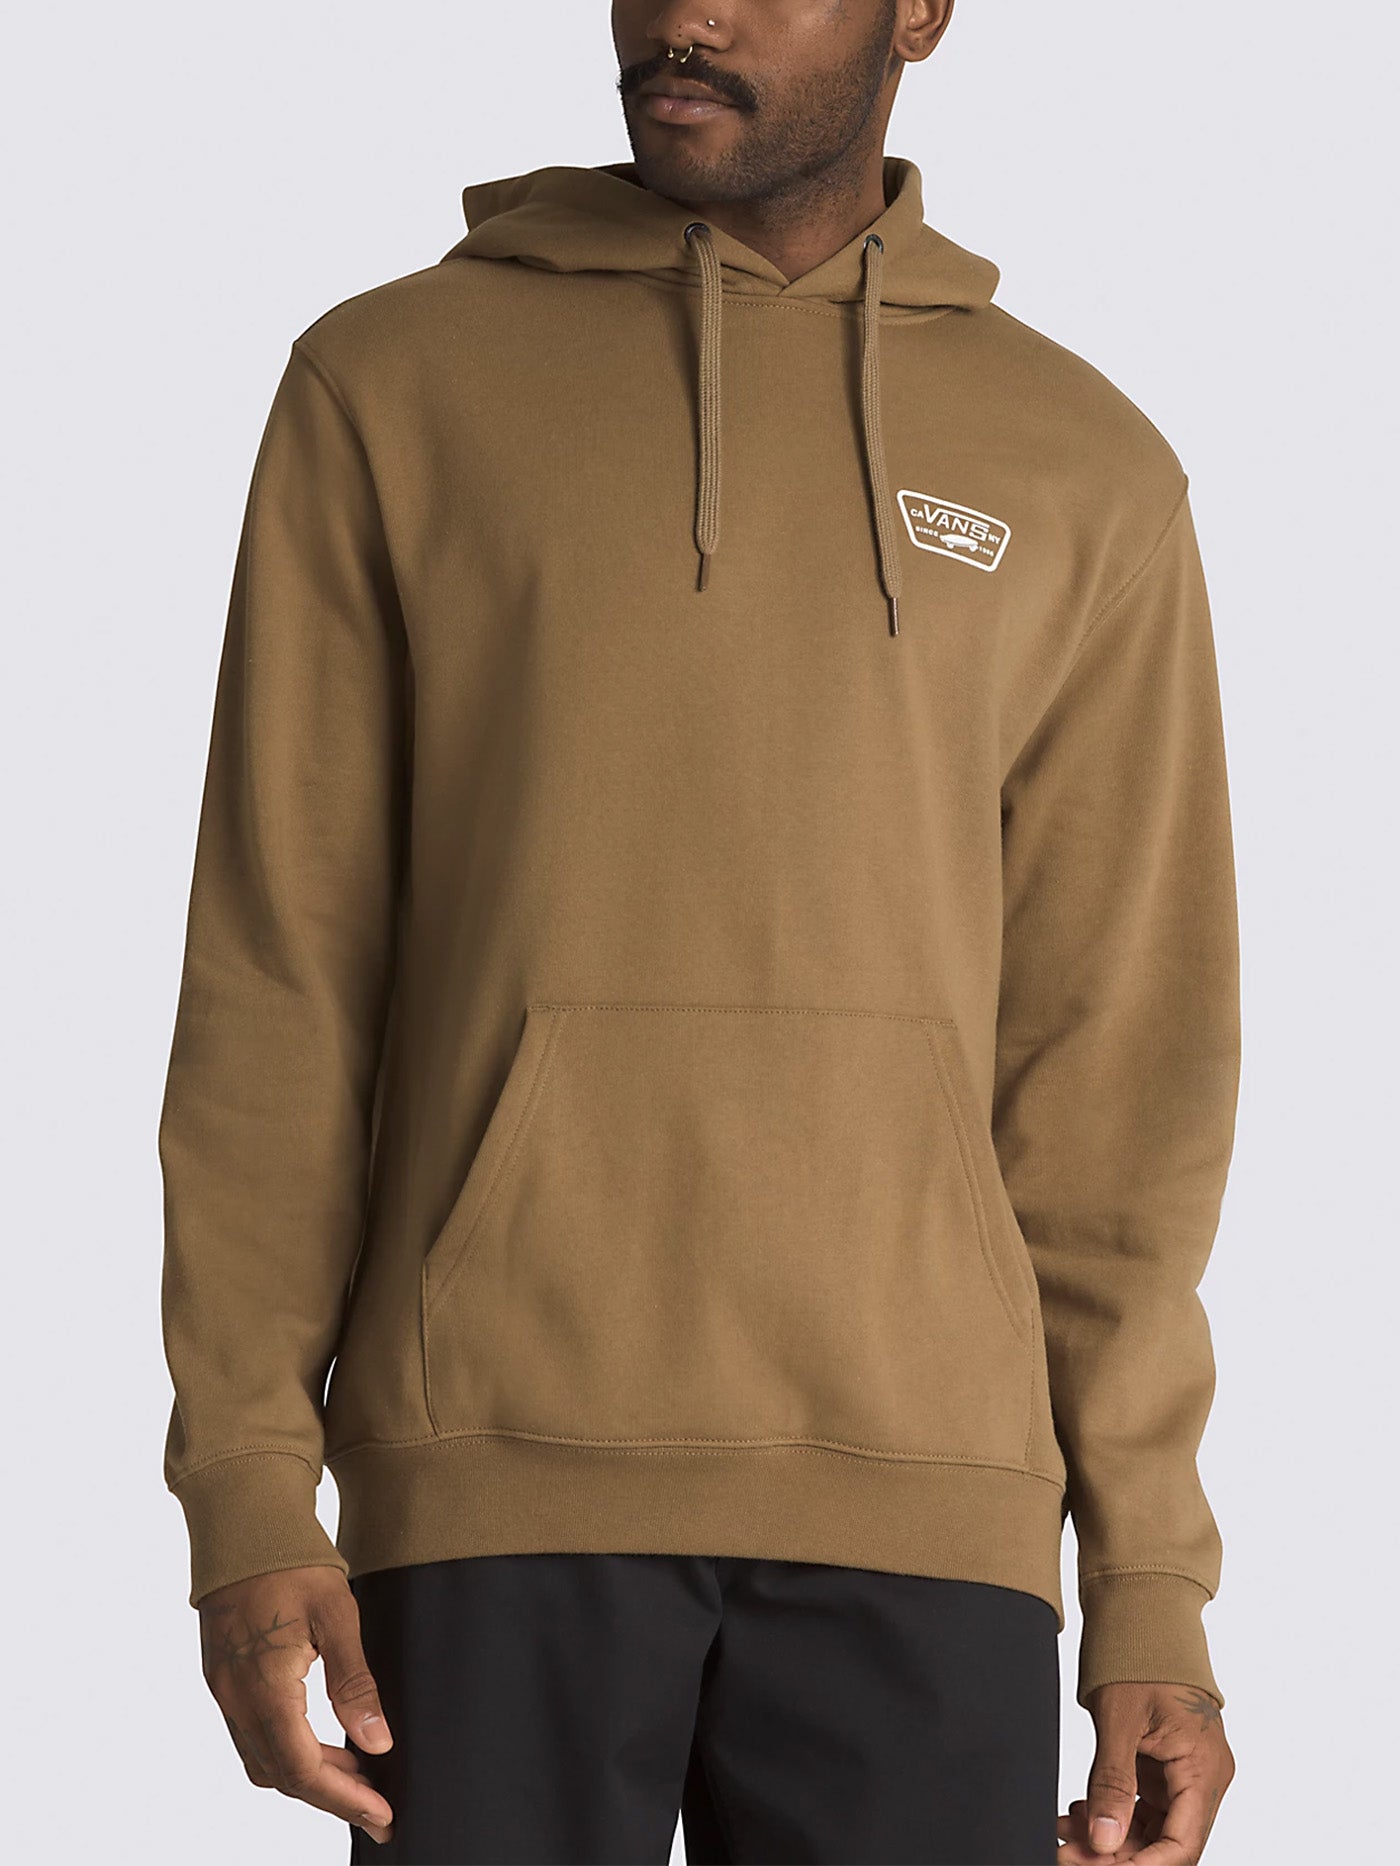 Hot Rod zip hoodie, Vans, Men's Hoodies & Sweatshirts